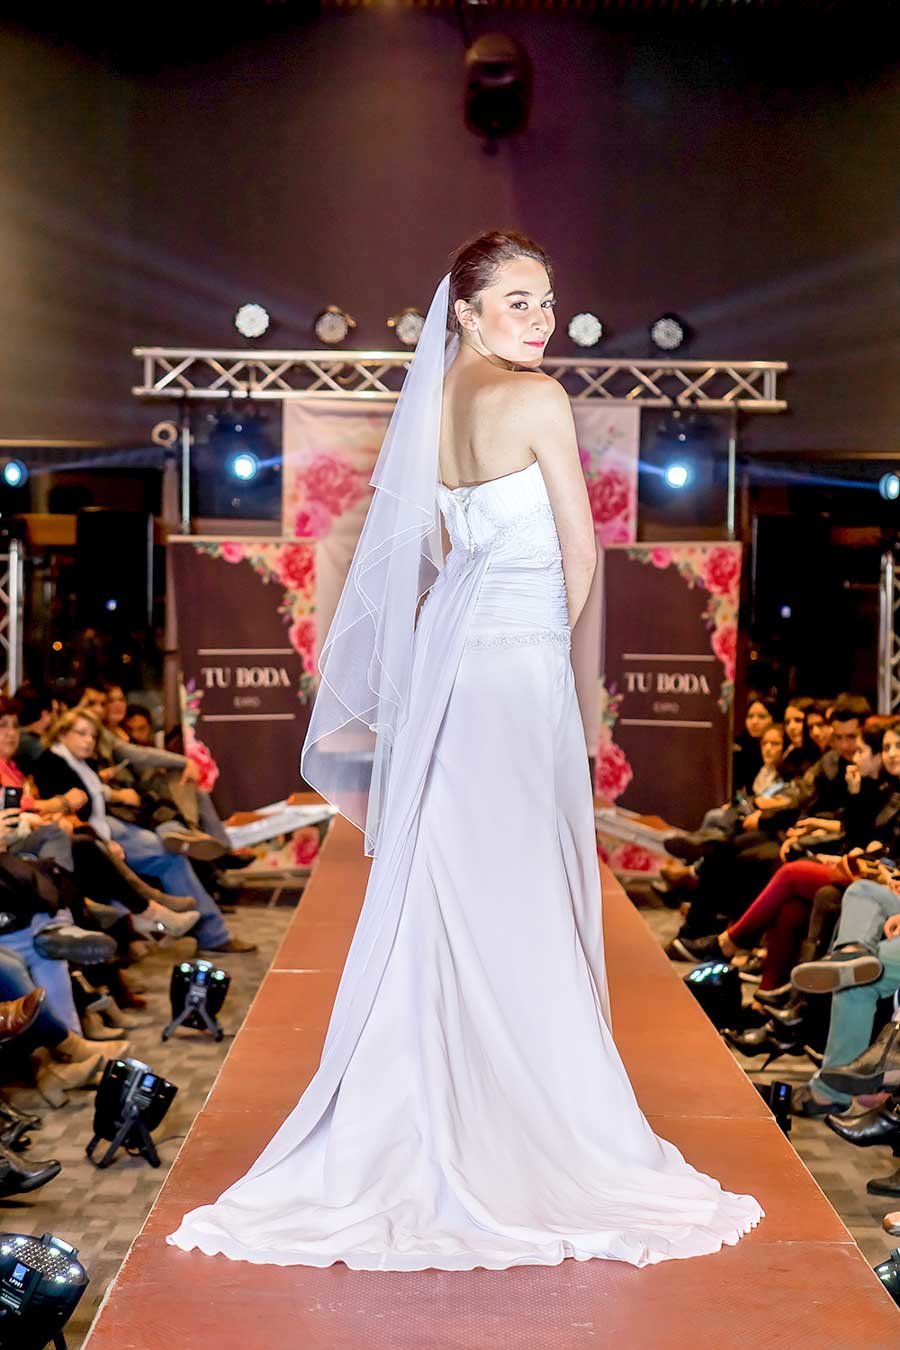 Novia con velo de tul blanco y espalda corset desfilando en expo tu boda 2018